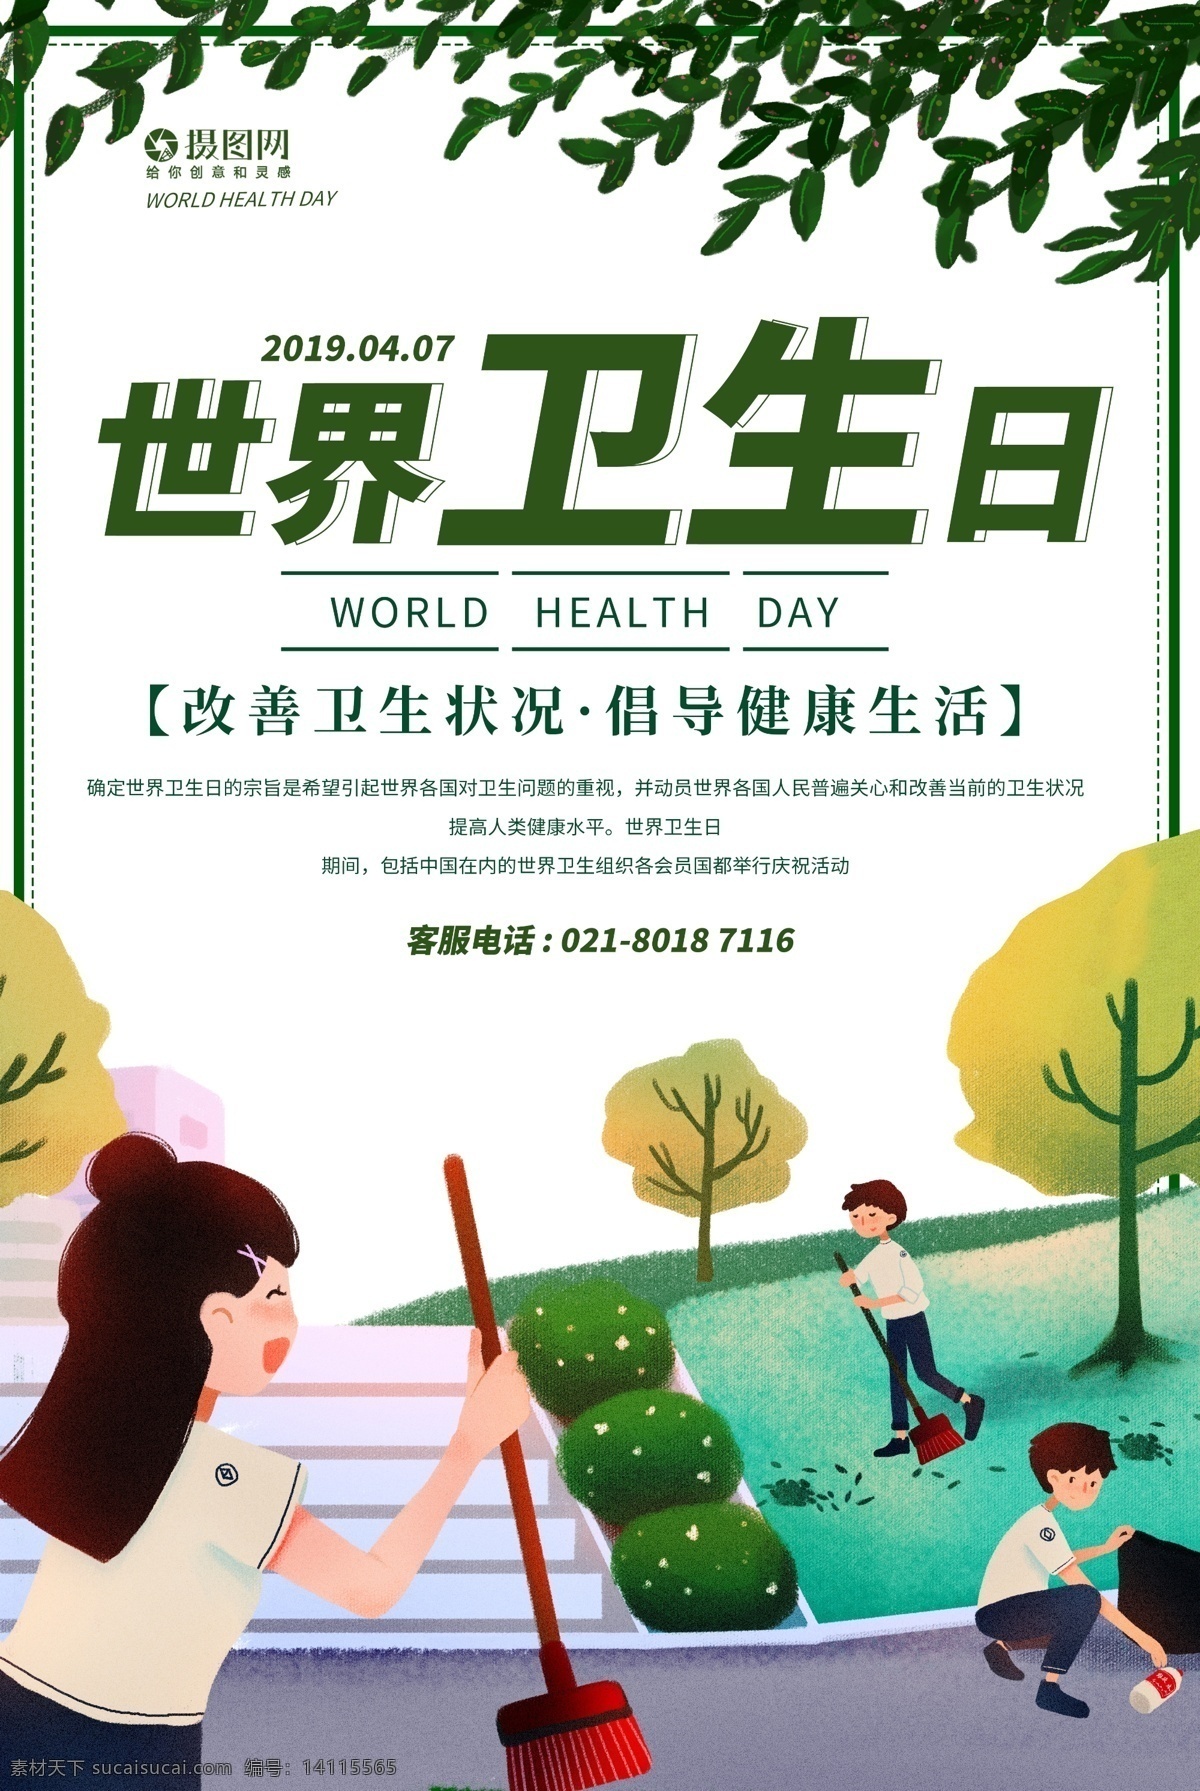 简约 清新 世界 卫生日 海报 世界卫生日 节日 打扫 清洁 卫生节 公益宣传